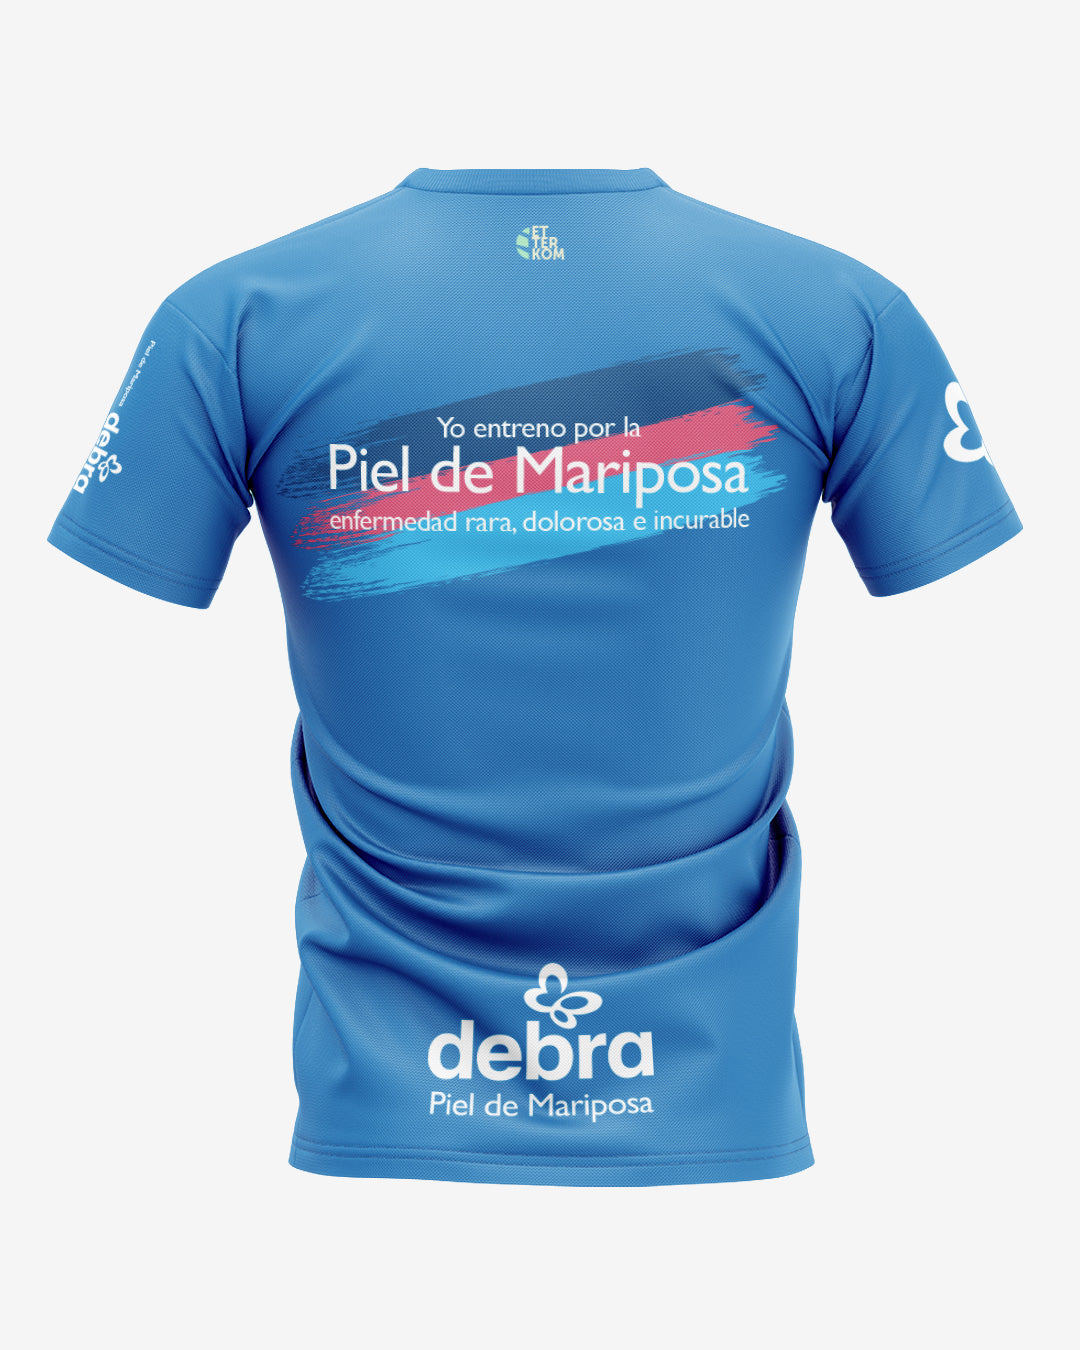 Camiseta DEBRA Piel de Mariposa ET85 BSB22 Unisex